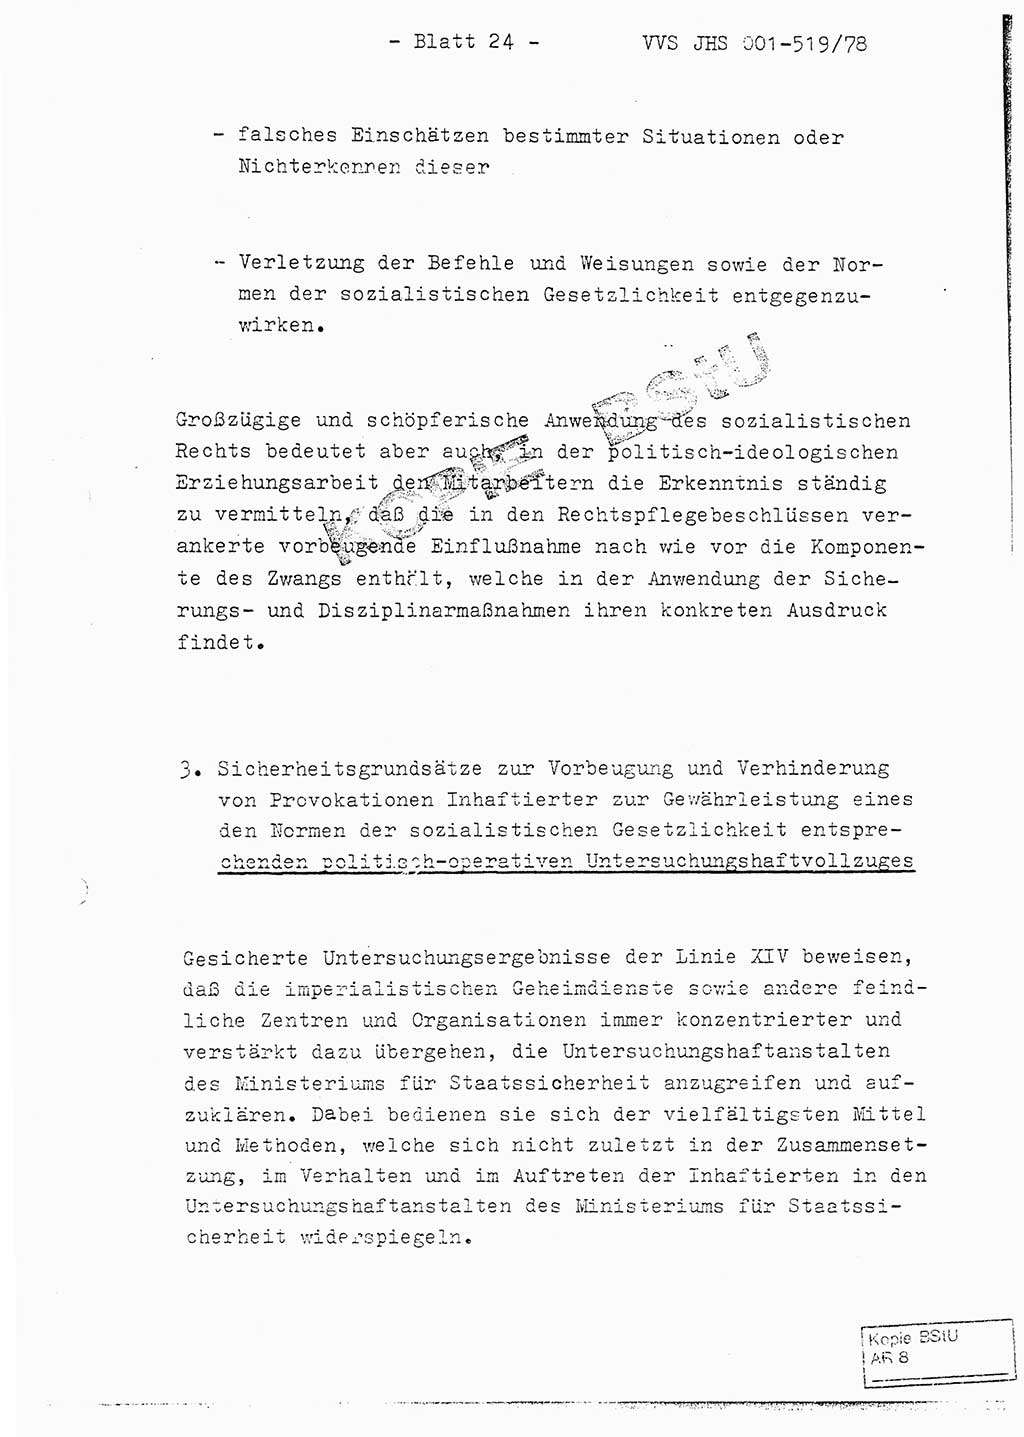 Fachschulabschlußarbeit Hauptmann Alfons Lützelberger (Abt. ⅩⅣ), Ministerium für Staatssicherheit (MfS) [Deutsche Demokratische Republik (DDR)], Juristische Hochschule (JHS), Vertrauliche Verschlußsache (VVS) 001-519/78, Potsdam 1978, Blatt 24 (FS-Abschl.-Arb. MfS DDR JHS VVS 001-519/78 1978, Bl. 24)